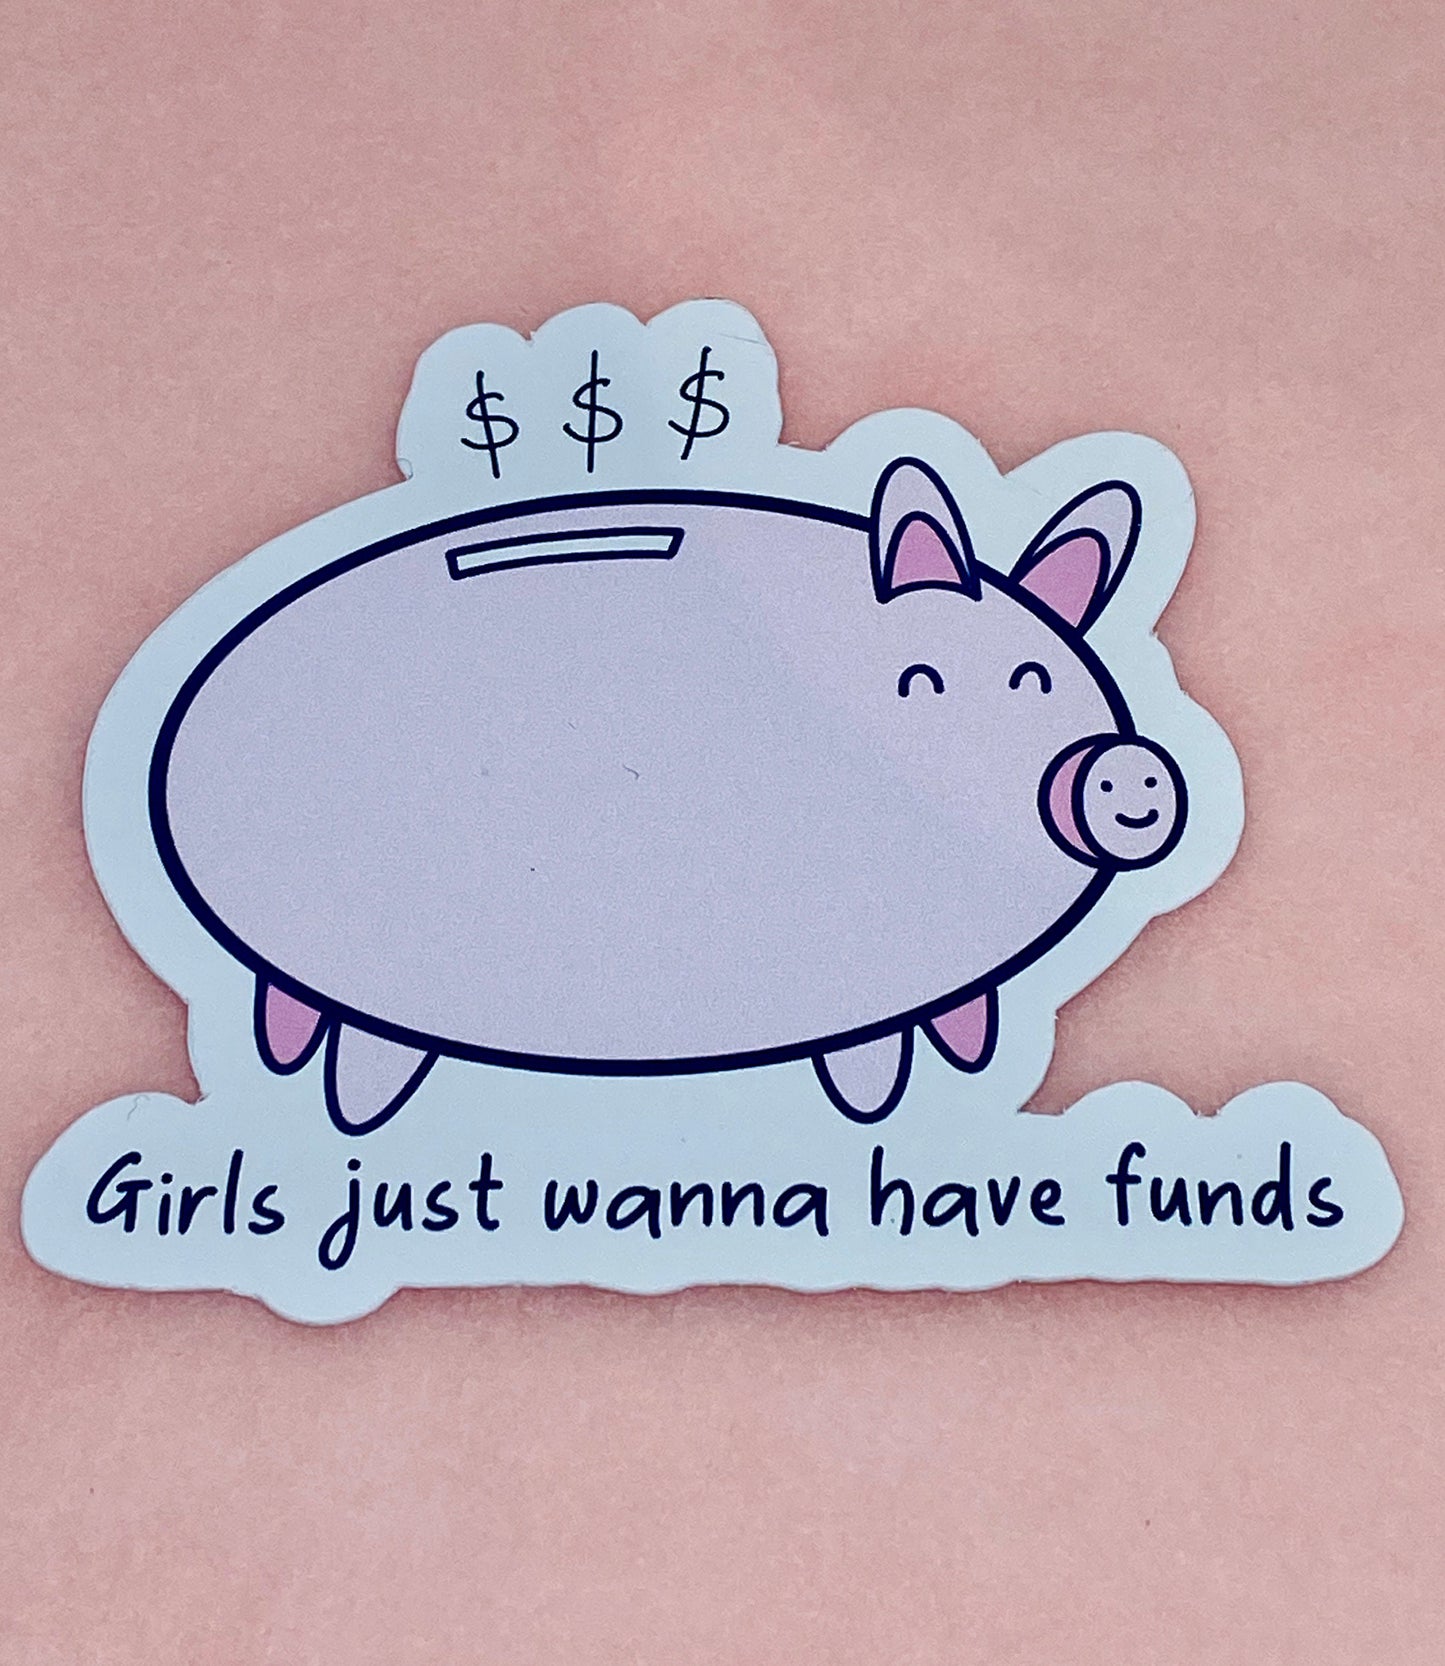 Girls just wanna have funds vinyl sticker